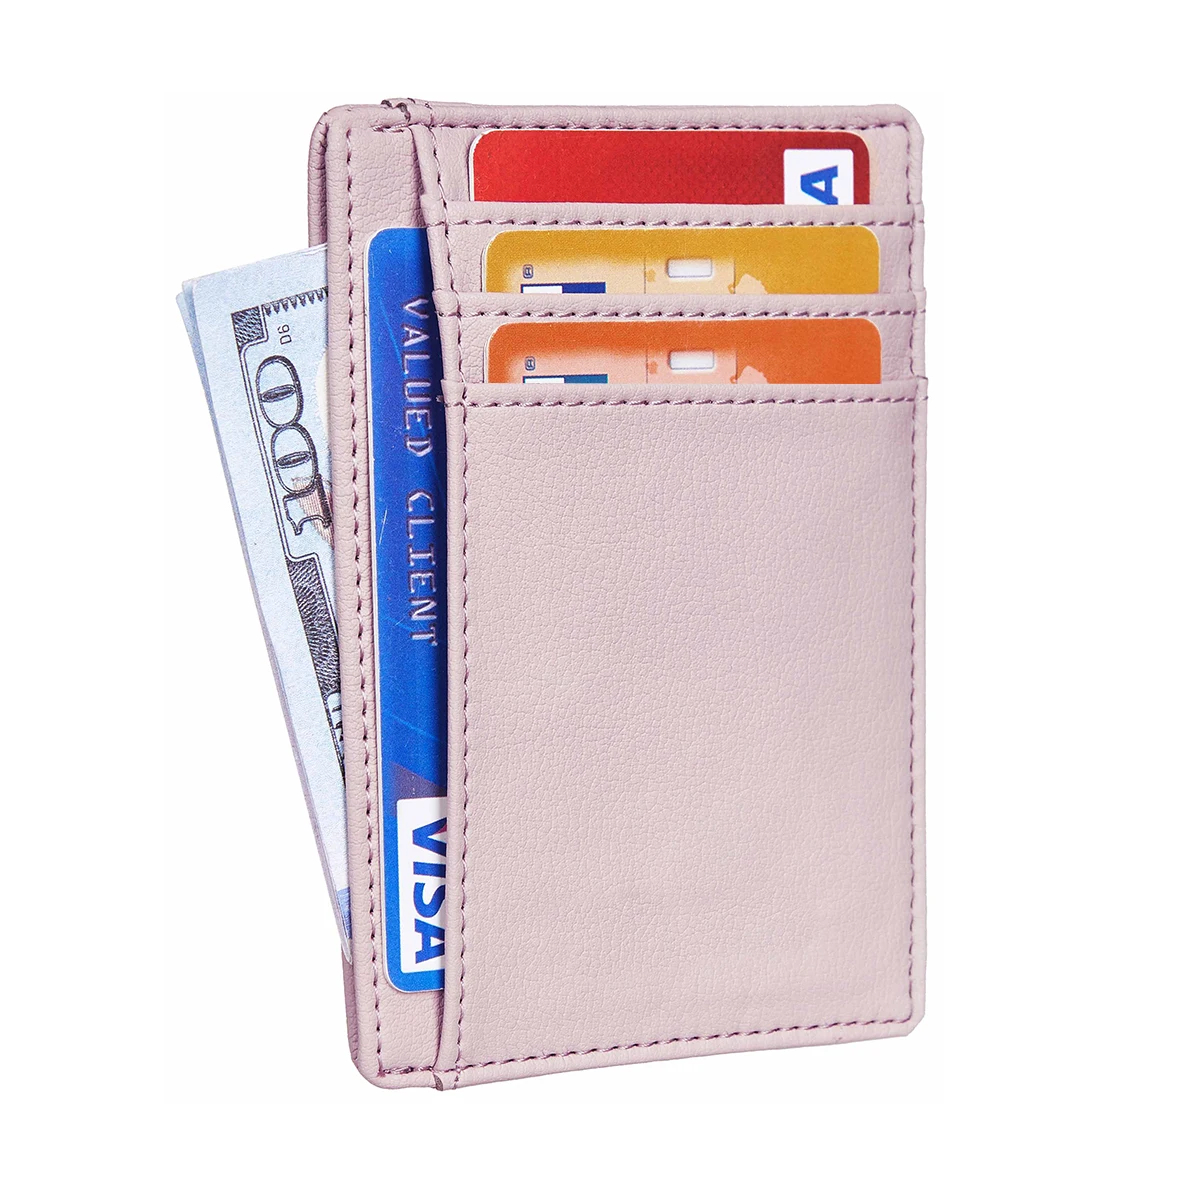 Dompet Card Holder Fashion Saku Depan Minimalis Custom